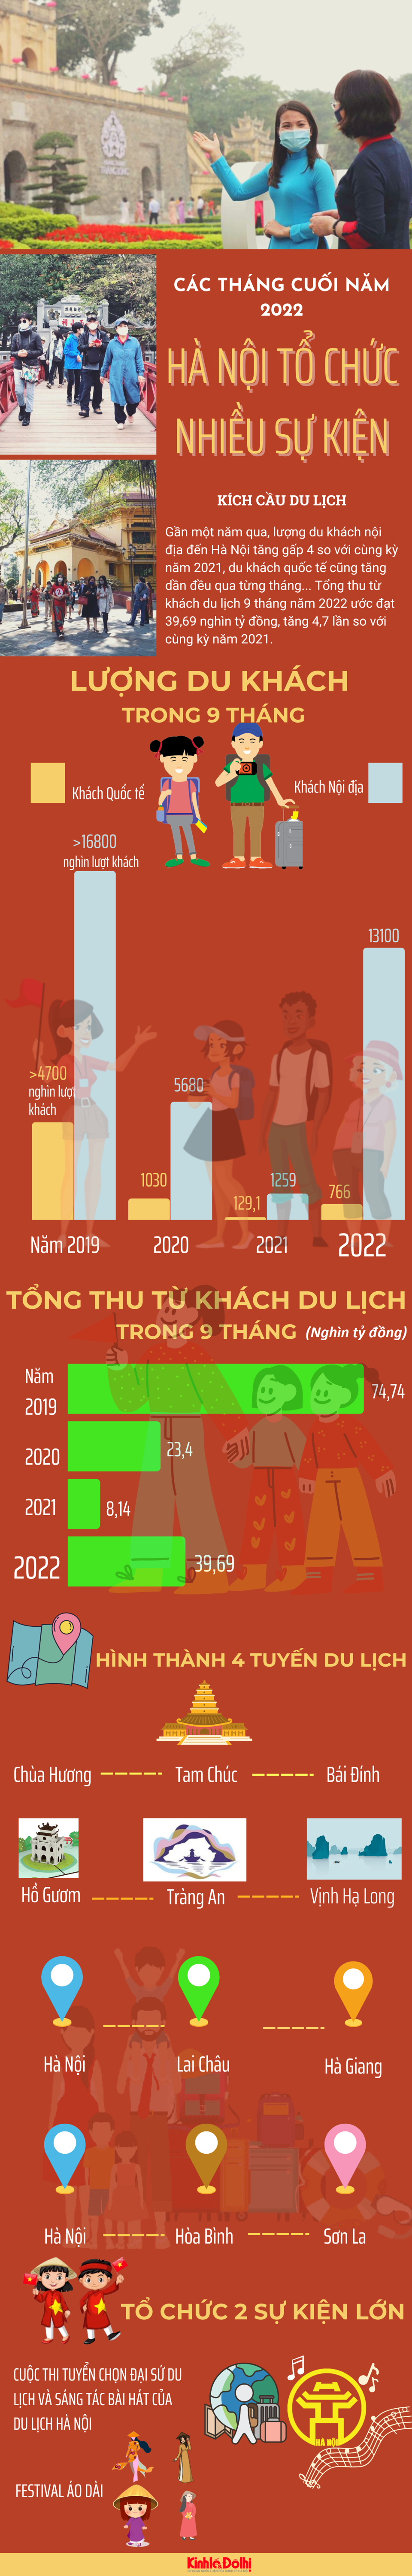 Hà Nội tổ chức nhiều chương trình kích cầu du lịch cuối năm 2022 - Ảnh 1